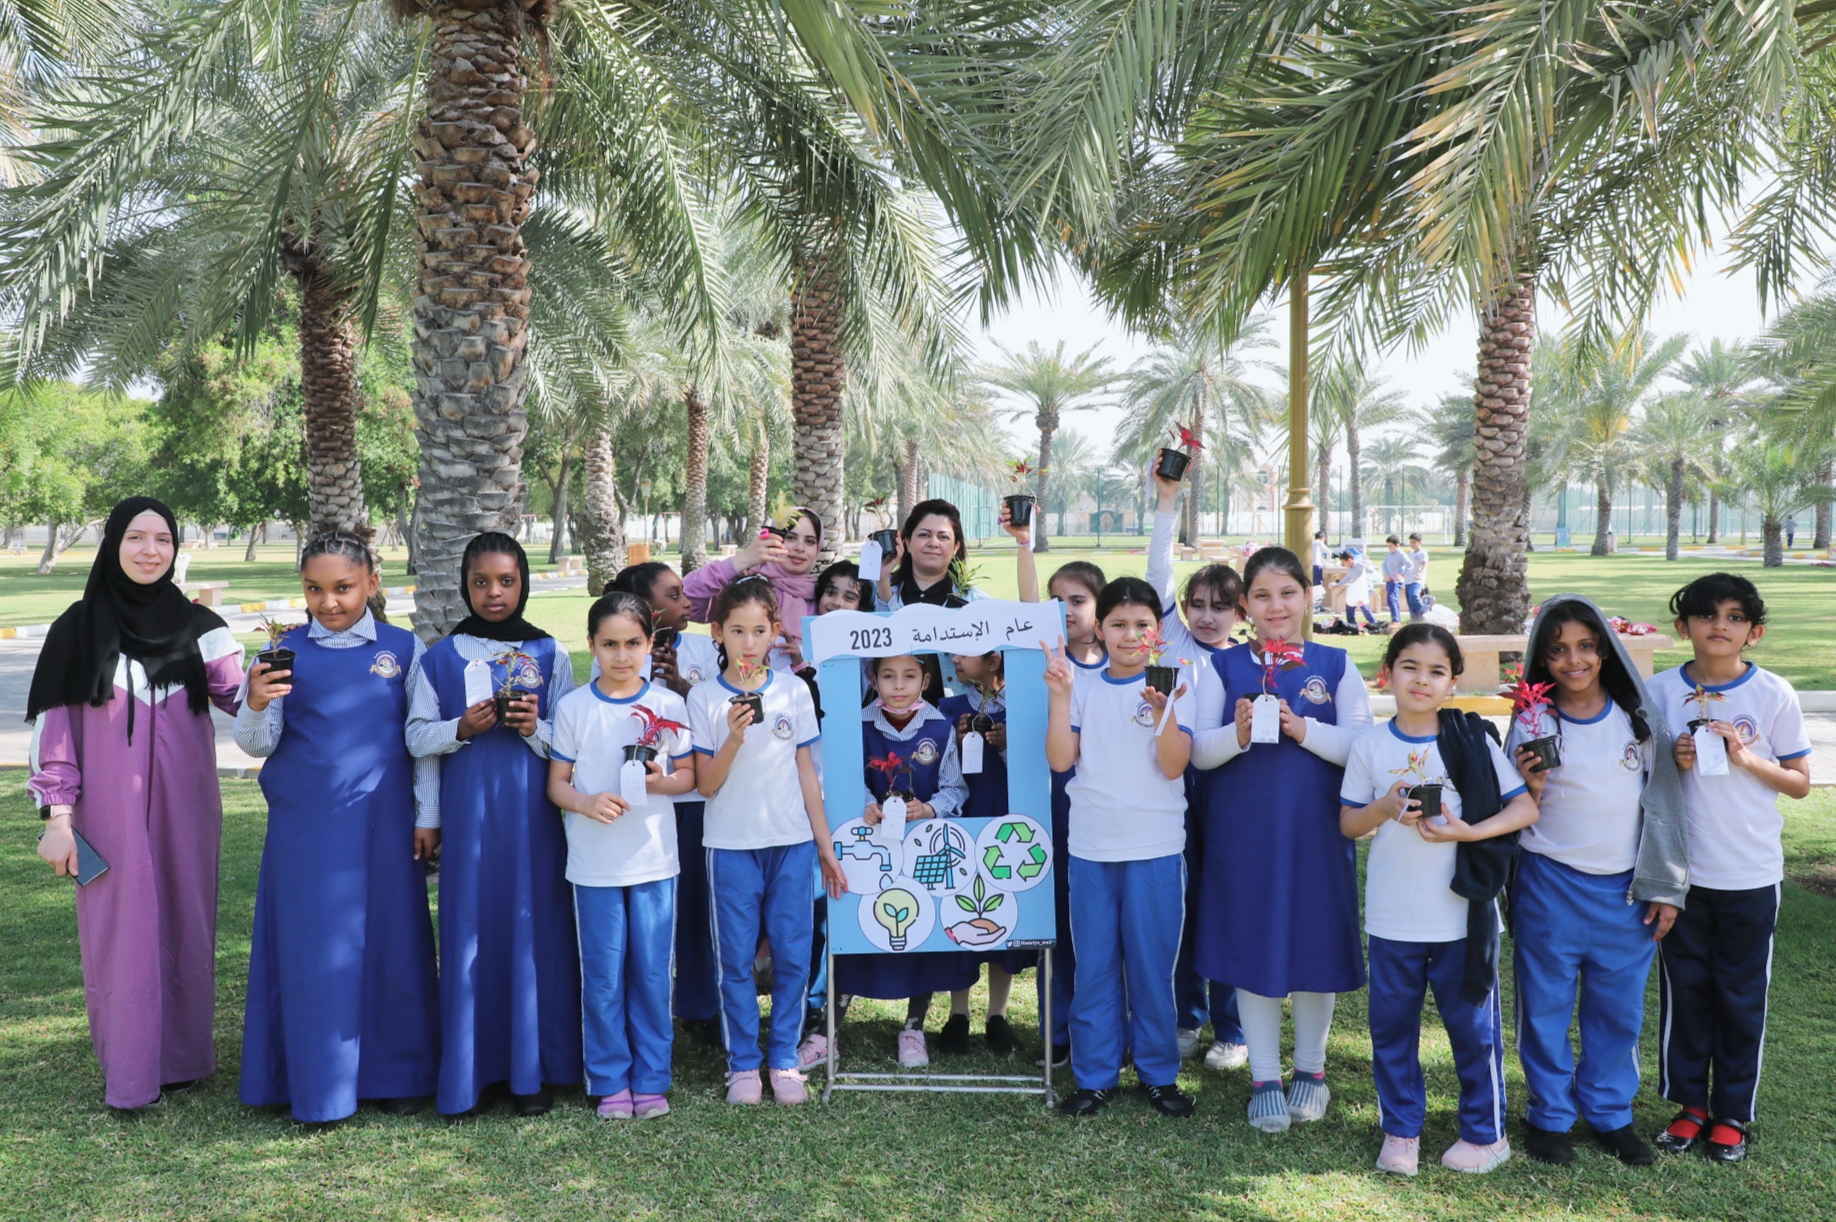 بلدية الحمرية تستقبل المدارس ورياض الأطفال وتنظم برامج للطفولة في إطار مشاركتها "بيوم الطفل الإماراتي"